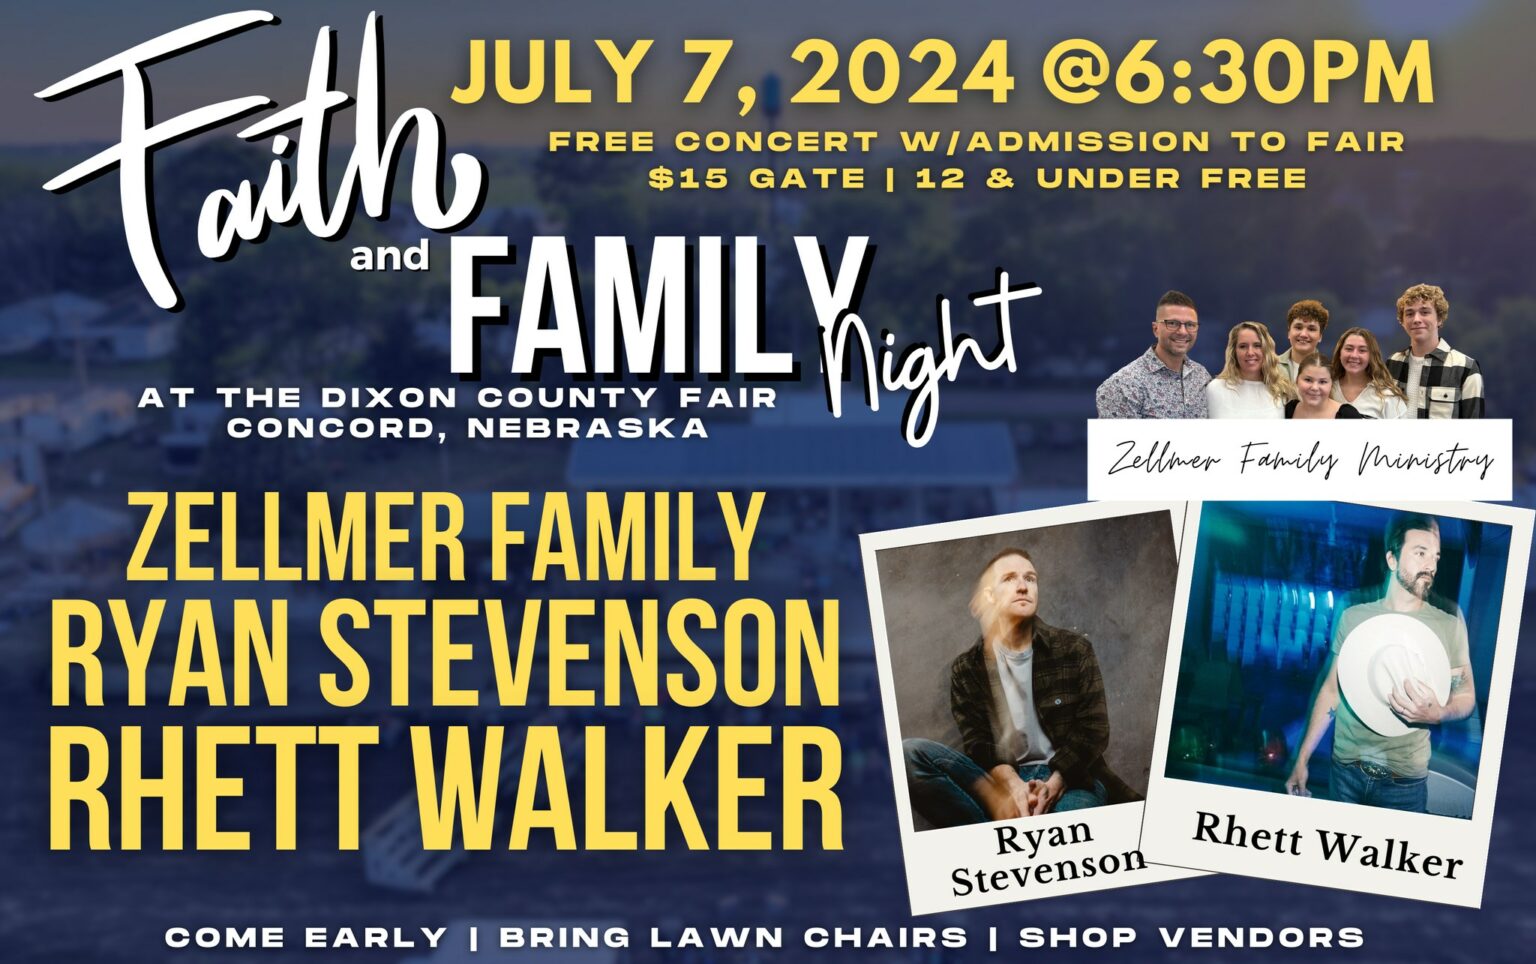 Faith & Family Night @ The Dixon County Fair - My Bridge Radio